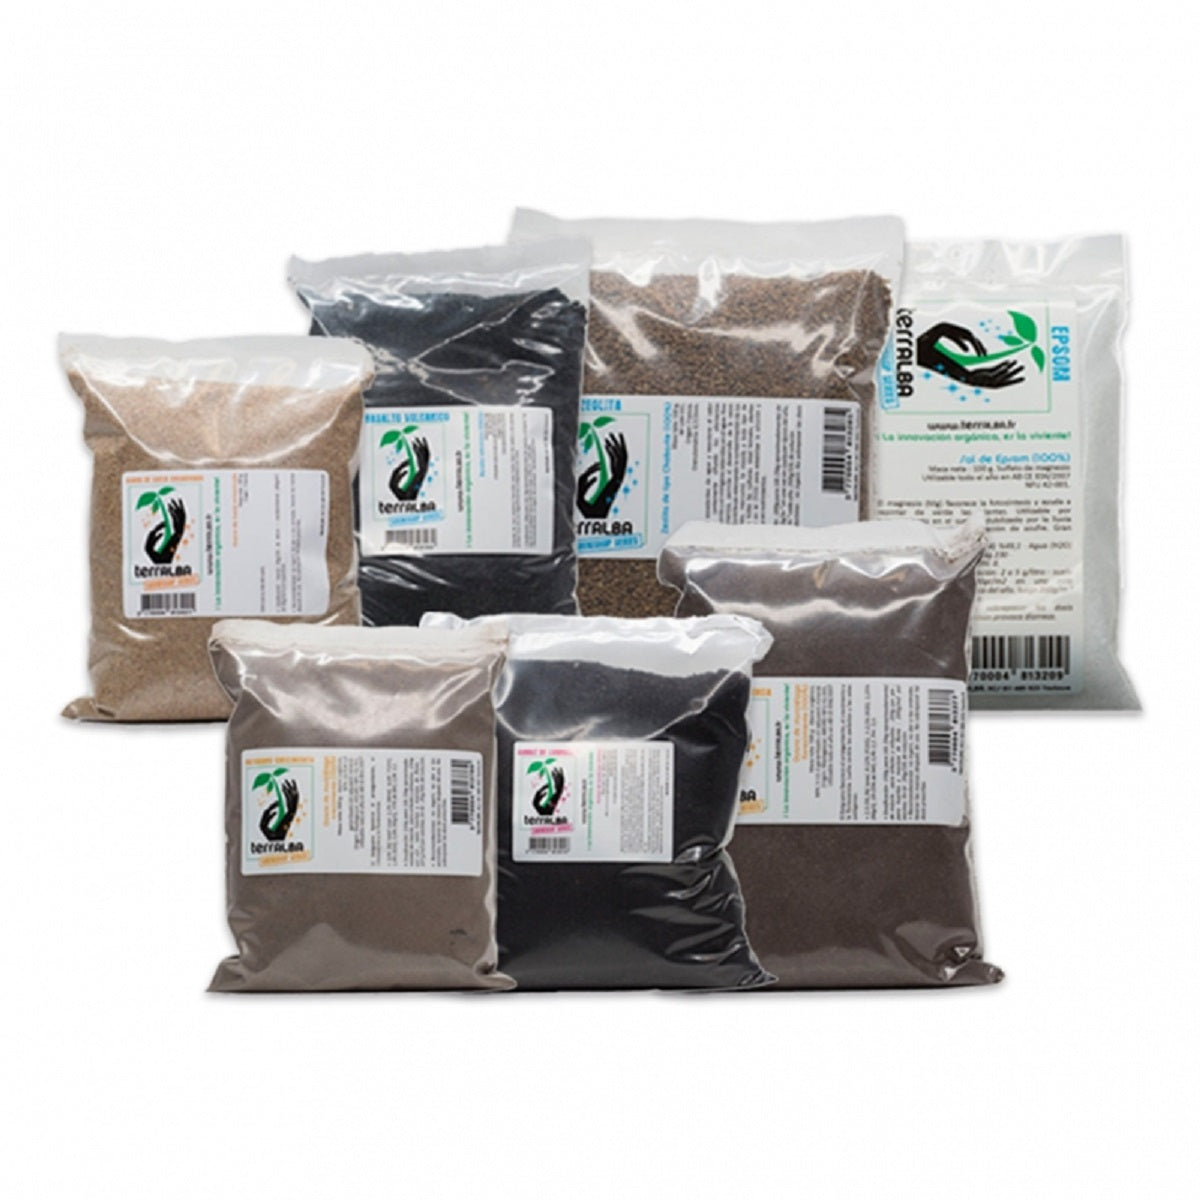 Pack d'engrais organique Terralba pour 50 litres de substrat